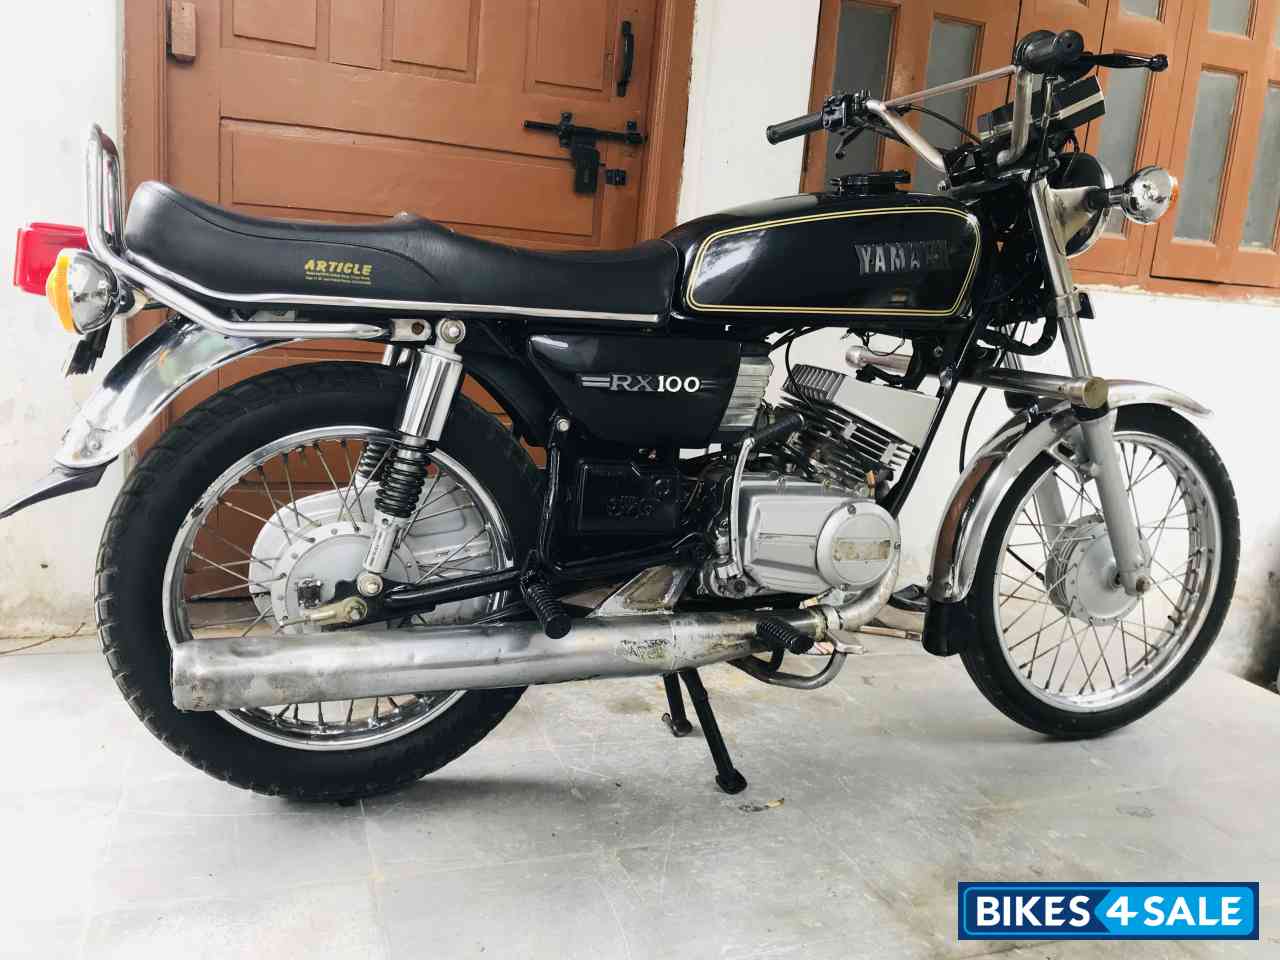 Rx100 Bike New Model 2018 Price In Hyderabad لم يسبق له مثيل الصور